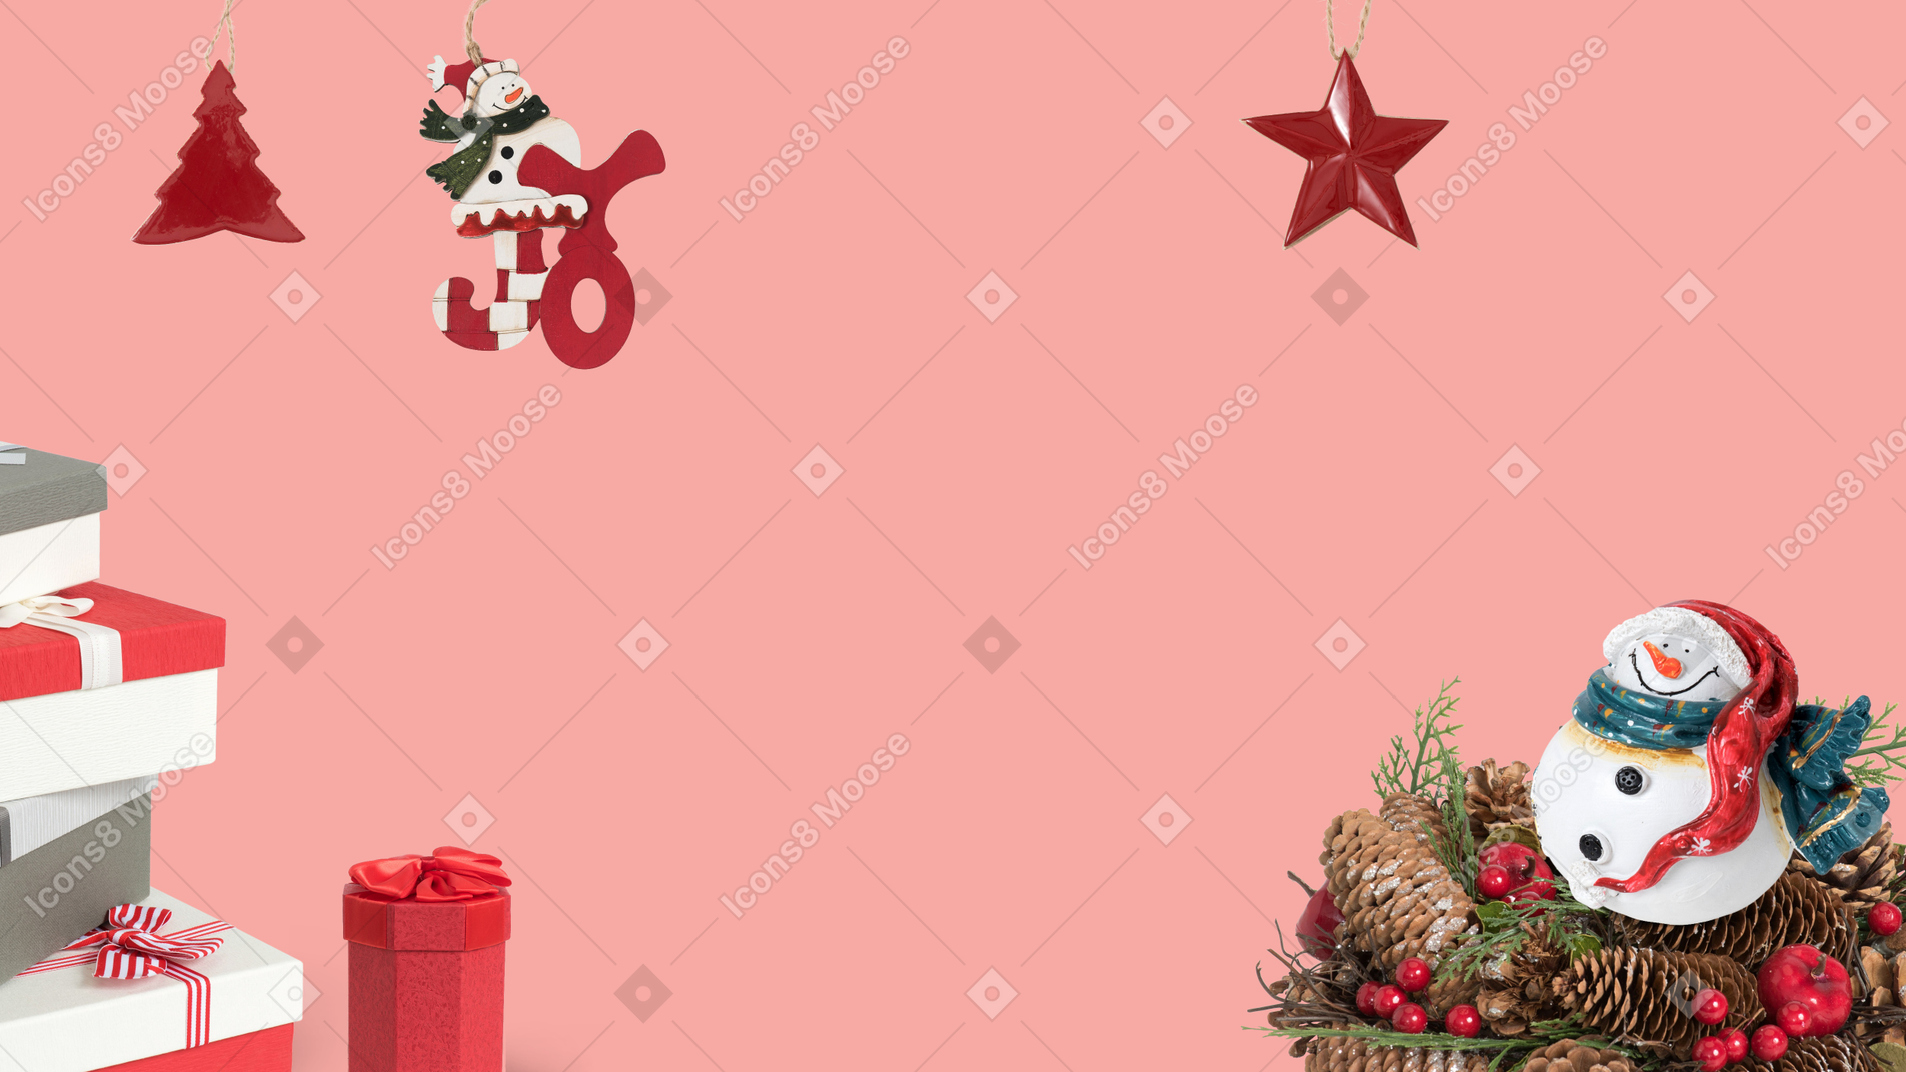 Weihnachtsgeschenke und dekorationen